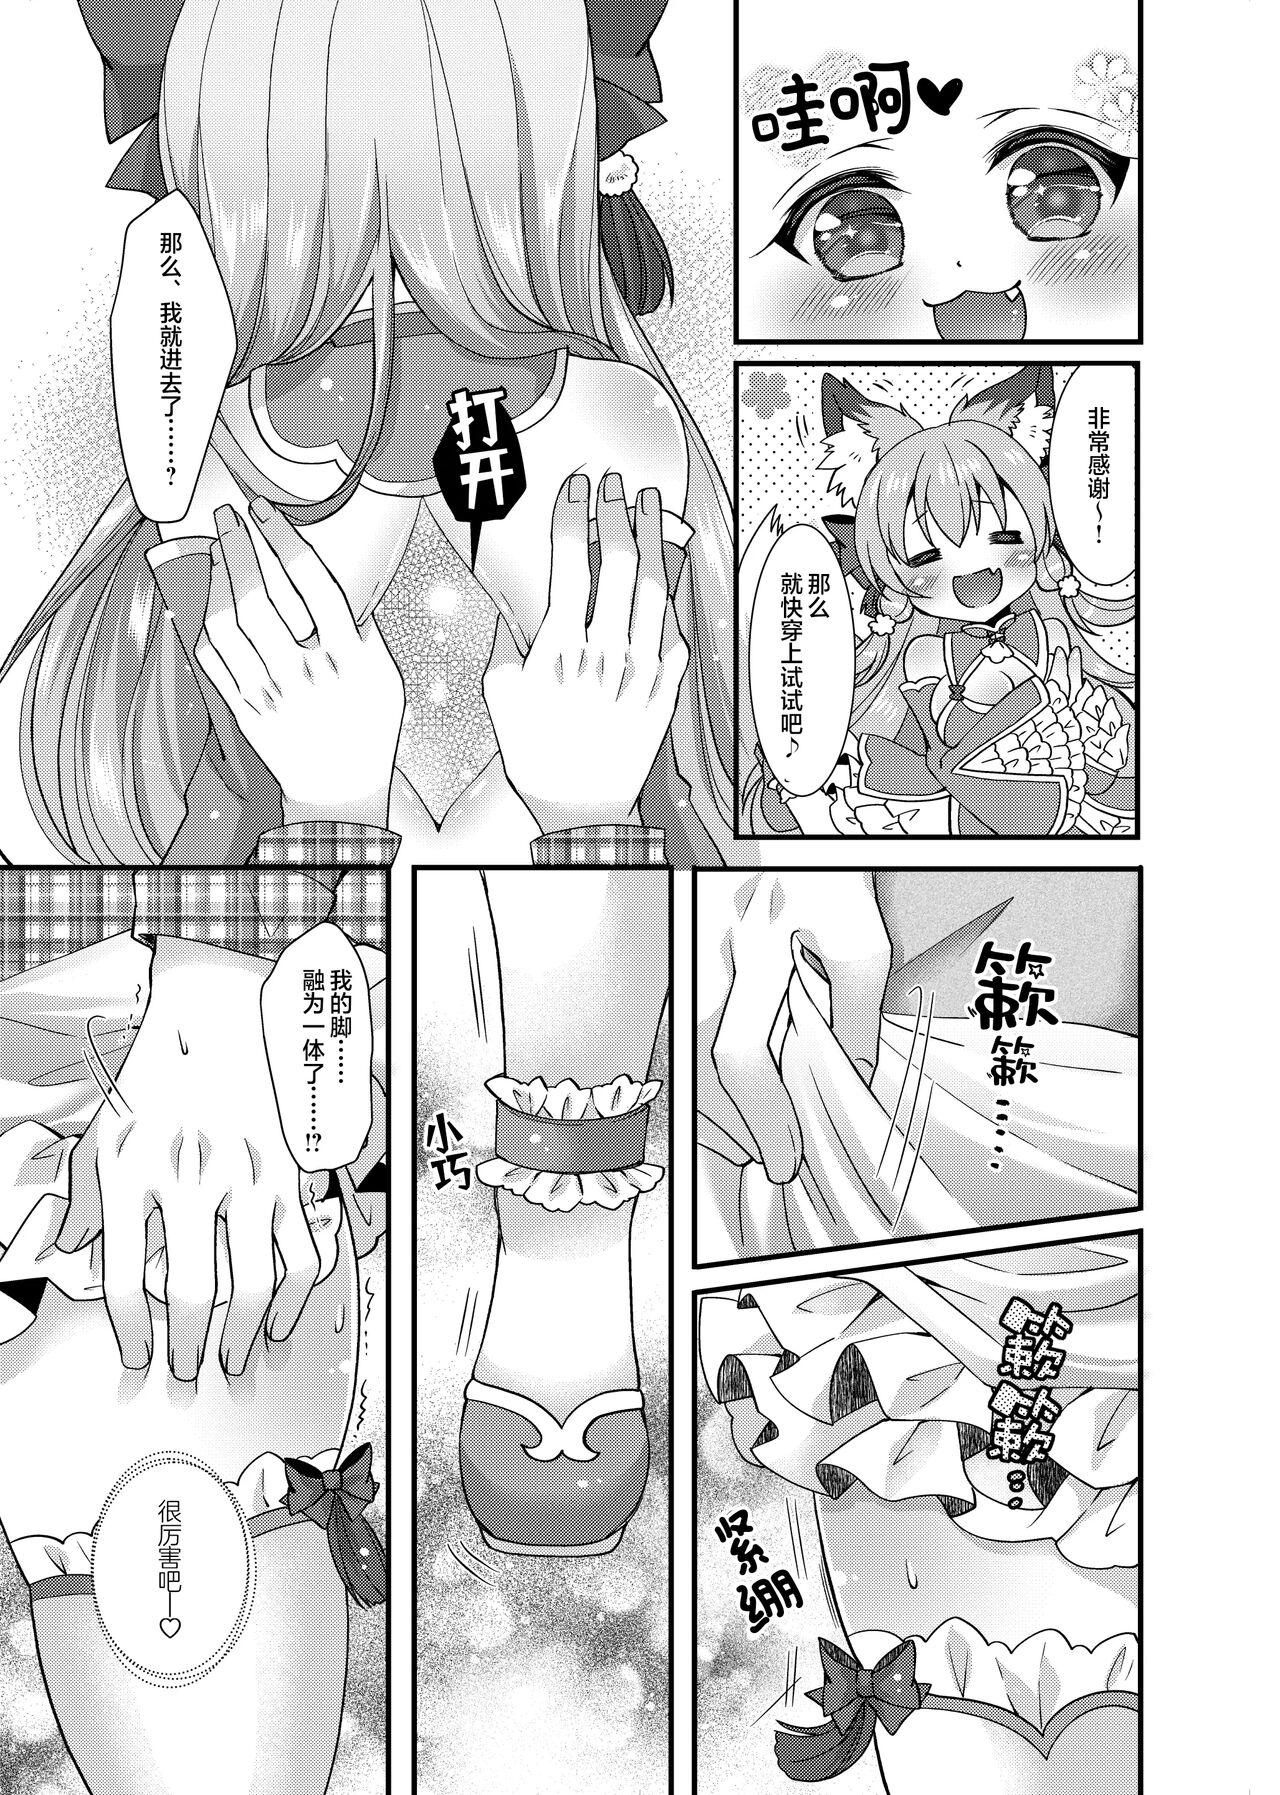 Hardcorend Yukemuri Konkon U-turn! - Original Stockings - Page 8